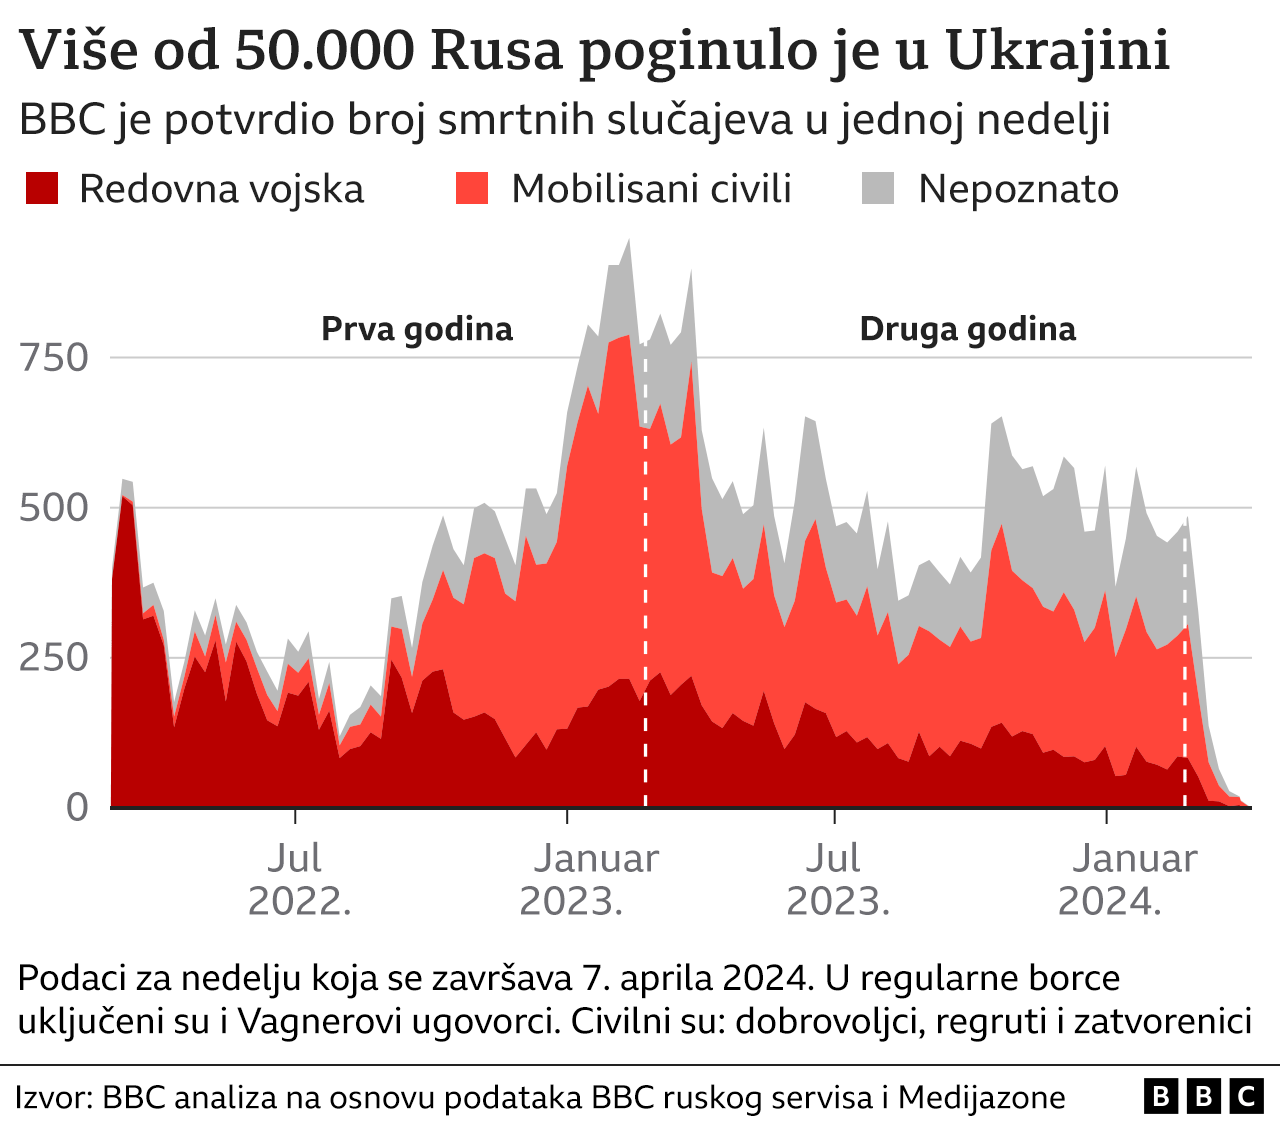 broj mrtvih Rusa u Ukrajini